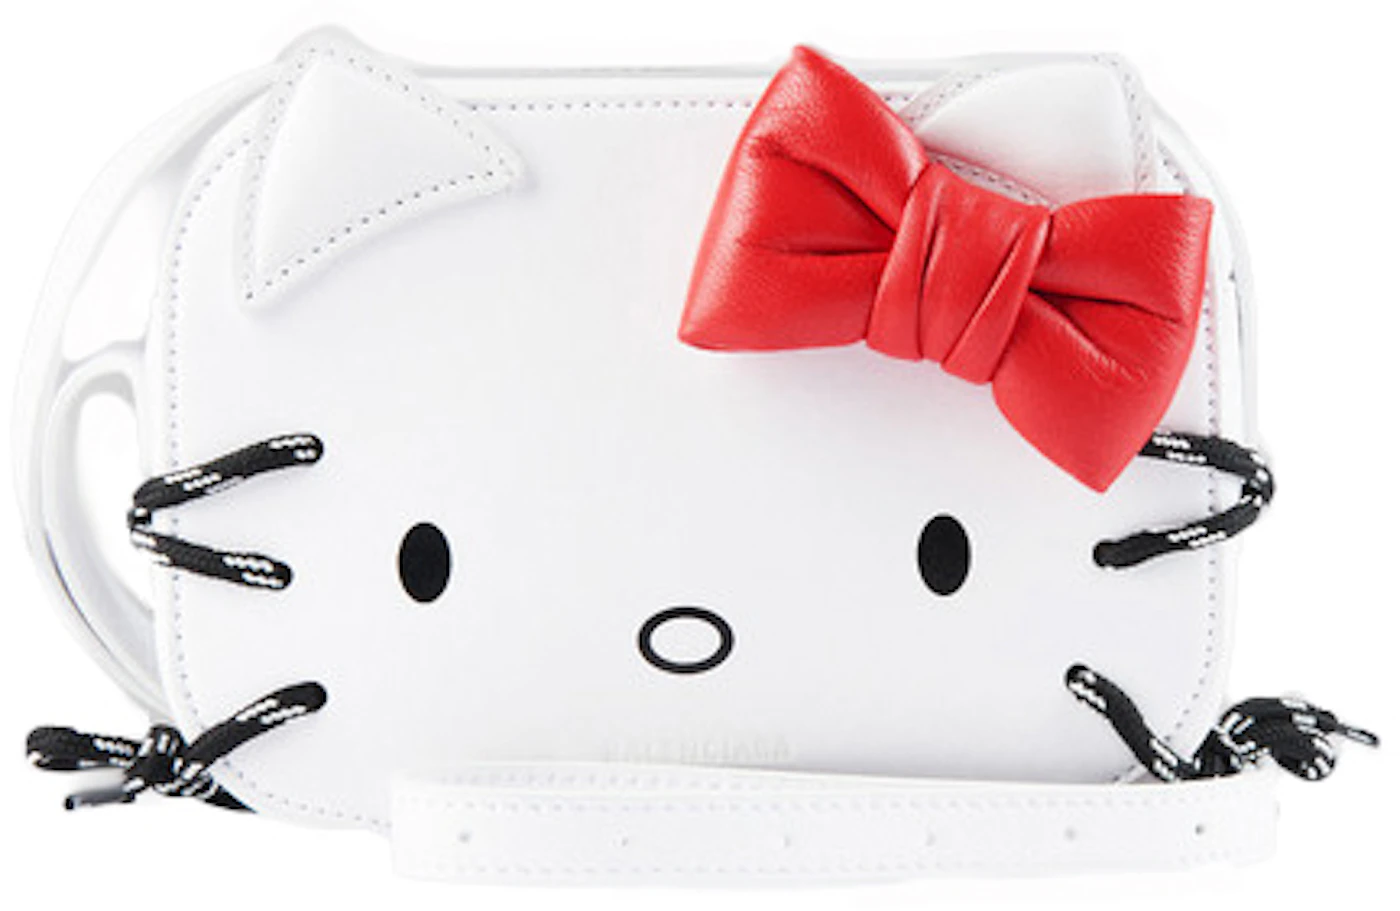 tas sling-bag Balenciaga Hello Kitty Camera Bag XS Pink Sling Bag